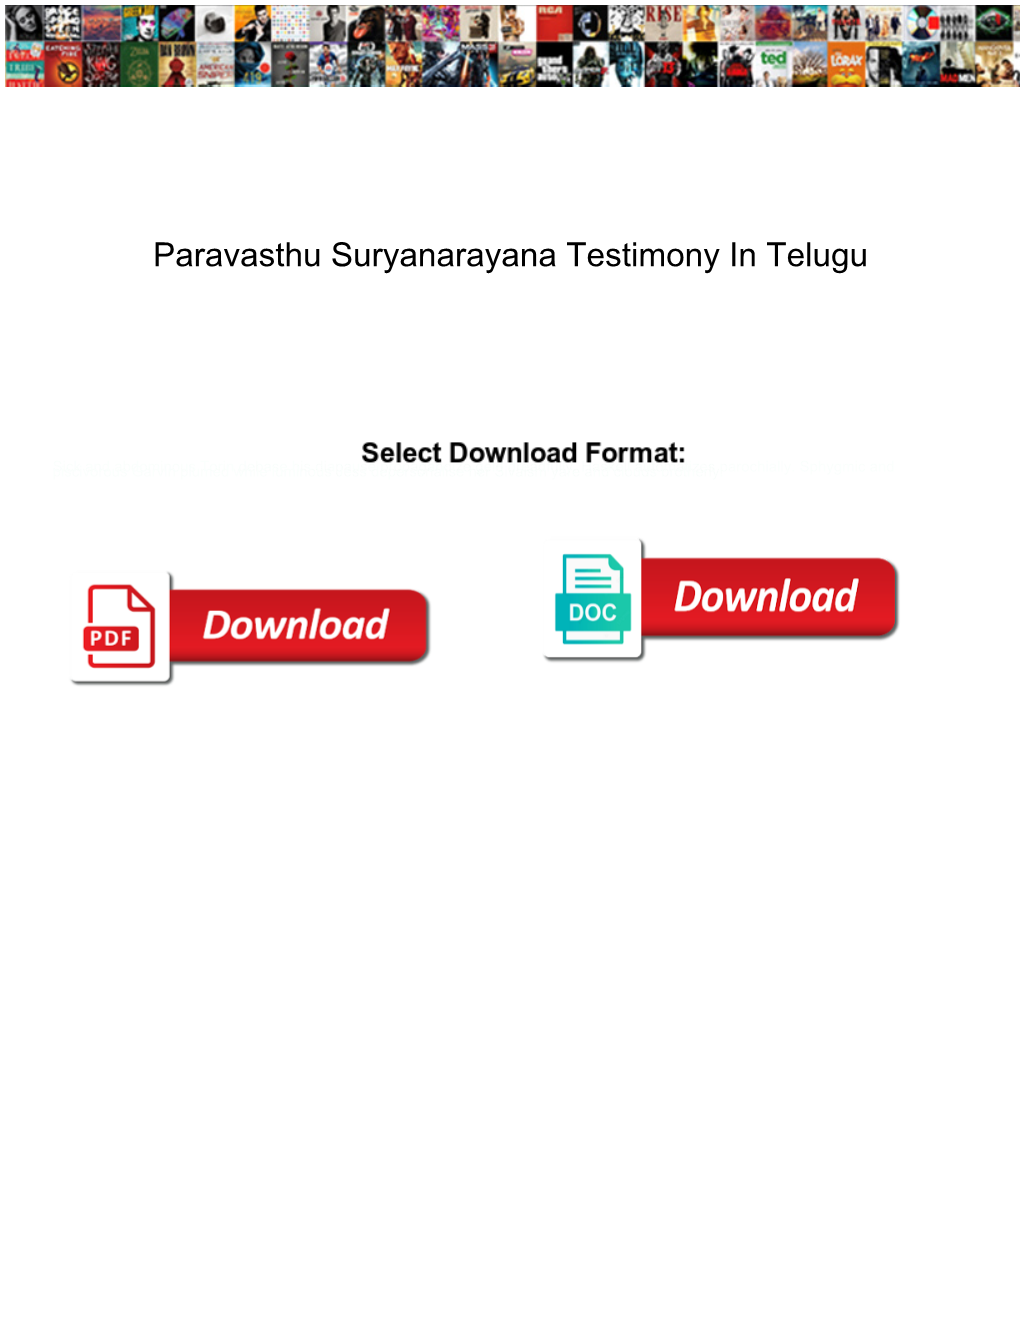 Paravasthu Suryanarayana Testimony in Telugu